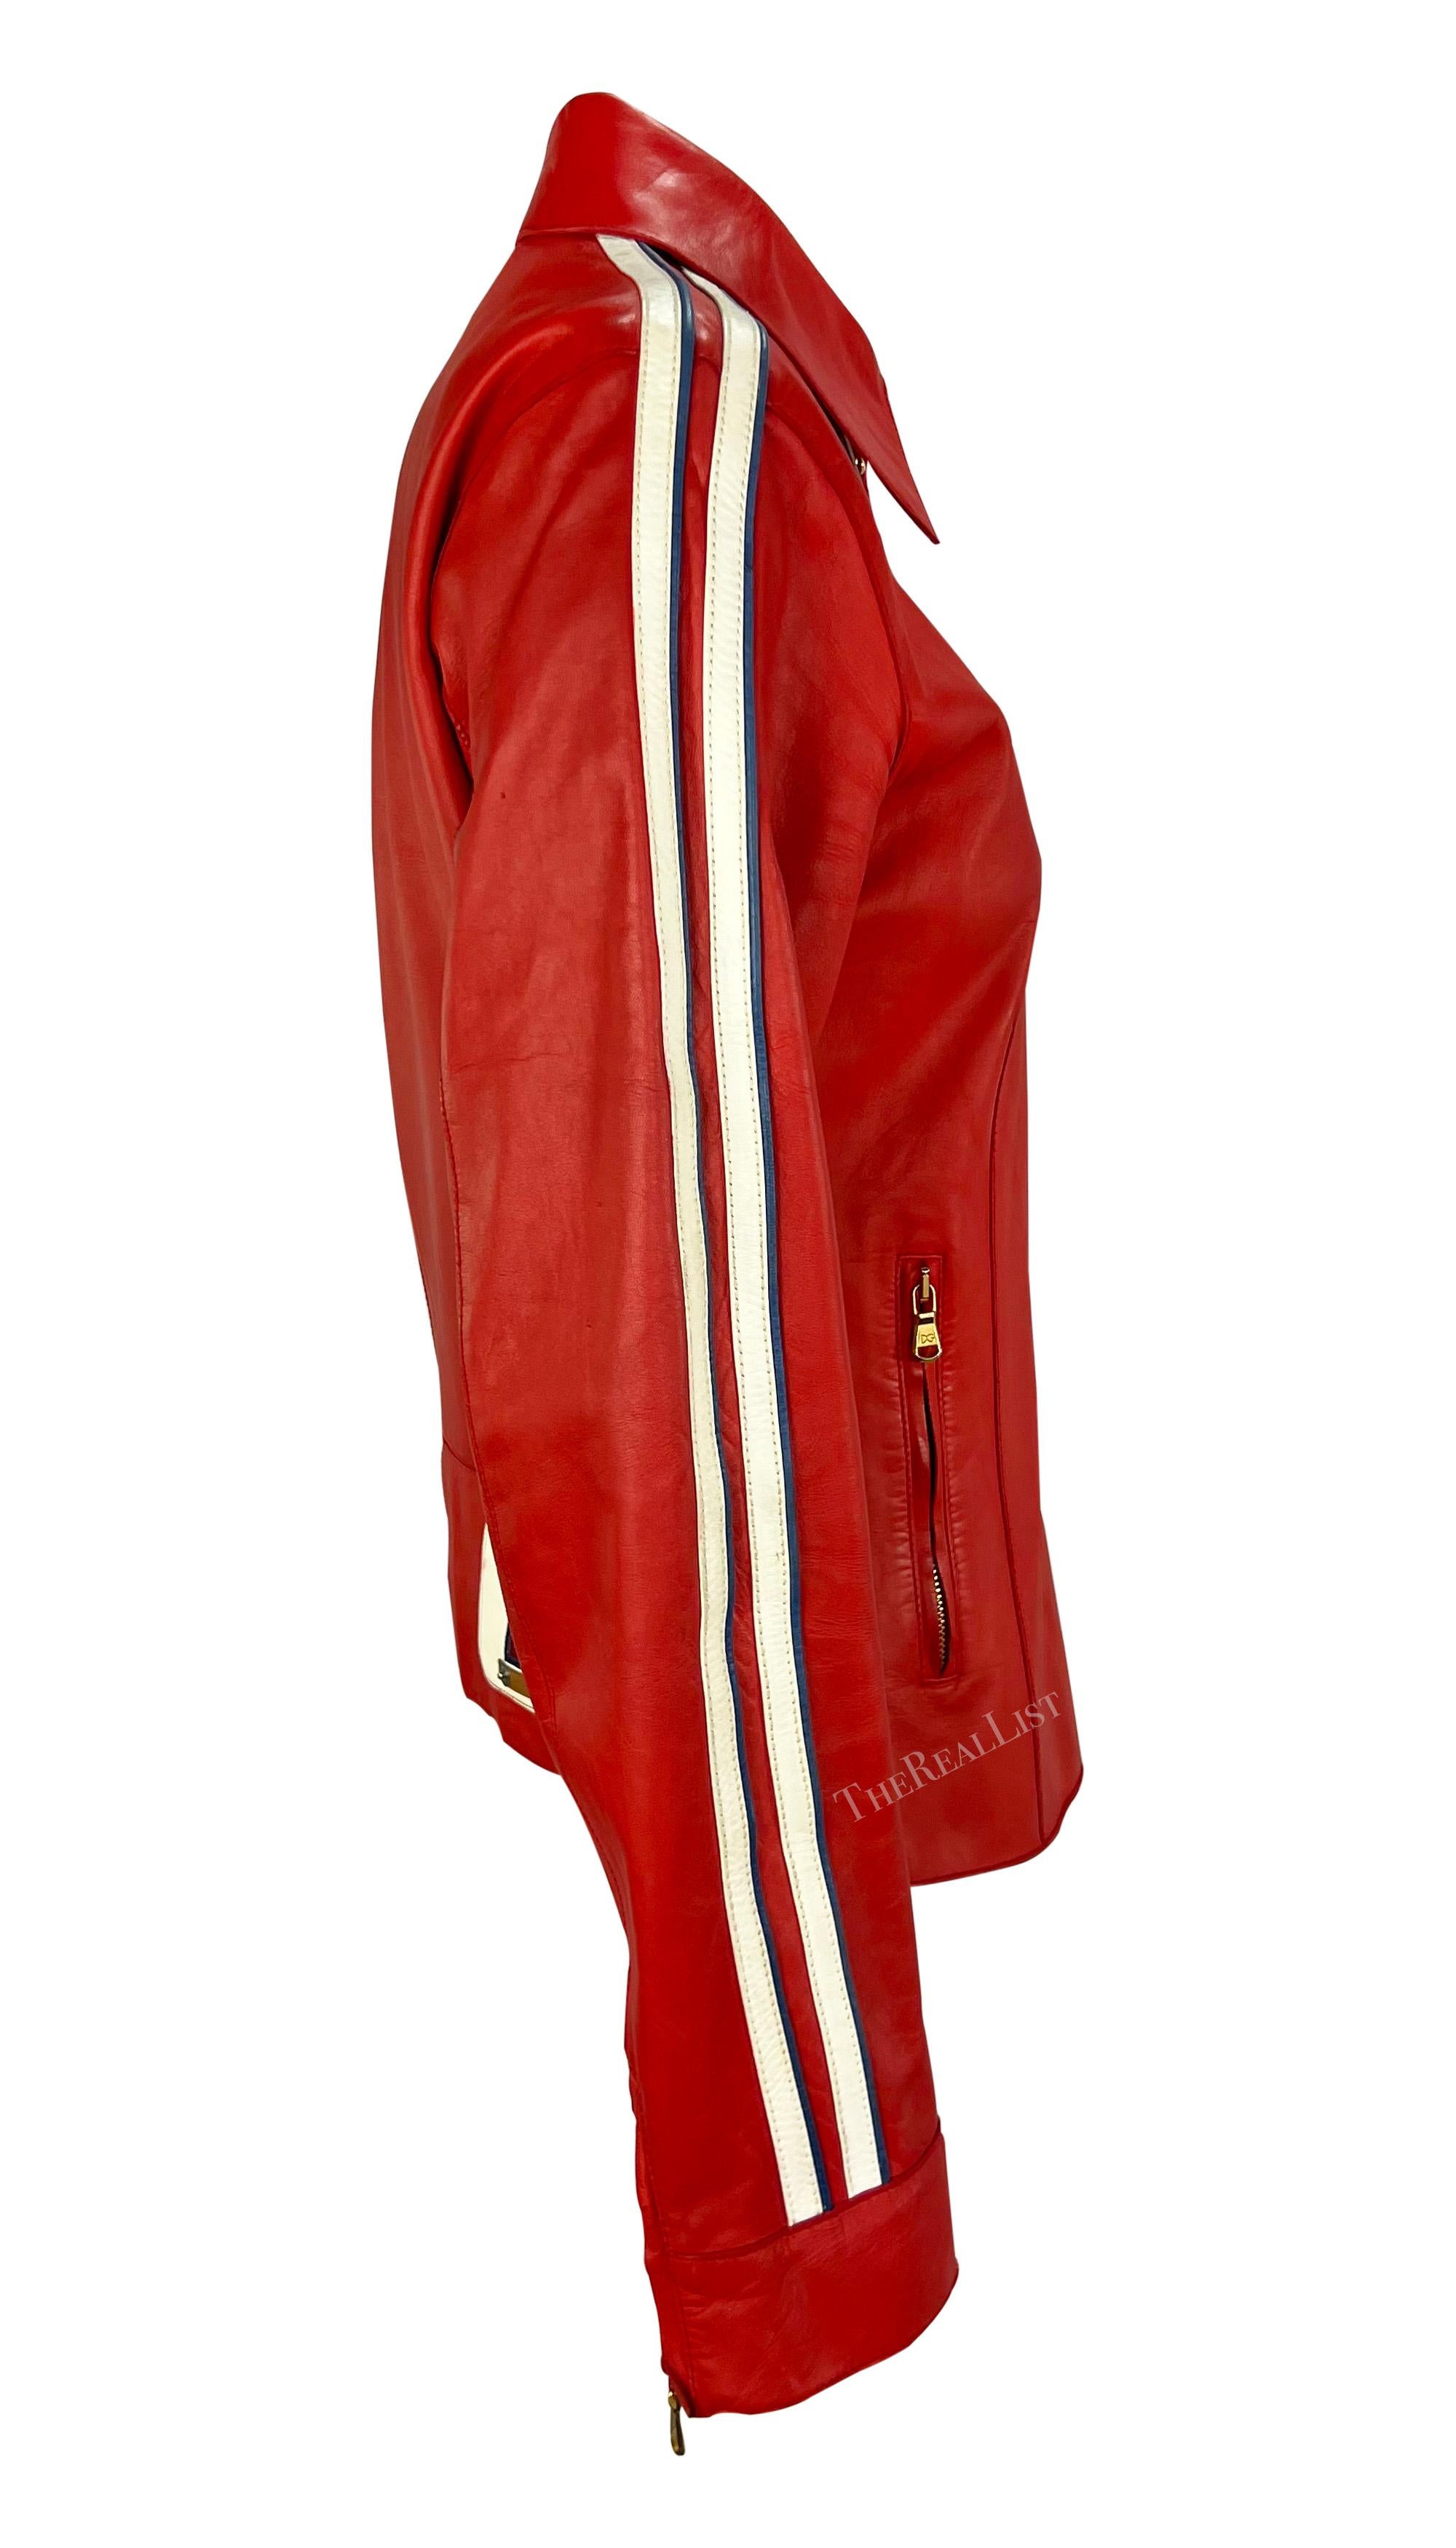 Présentant une veste de moto Dolce & Gabbana en cuir rouge chic. Issue de la collection printemps/été 2001, cette veste présente un col rabattable, des rayures blanches le long des bras et un petit 